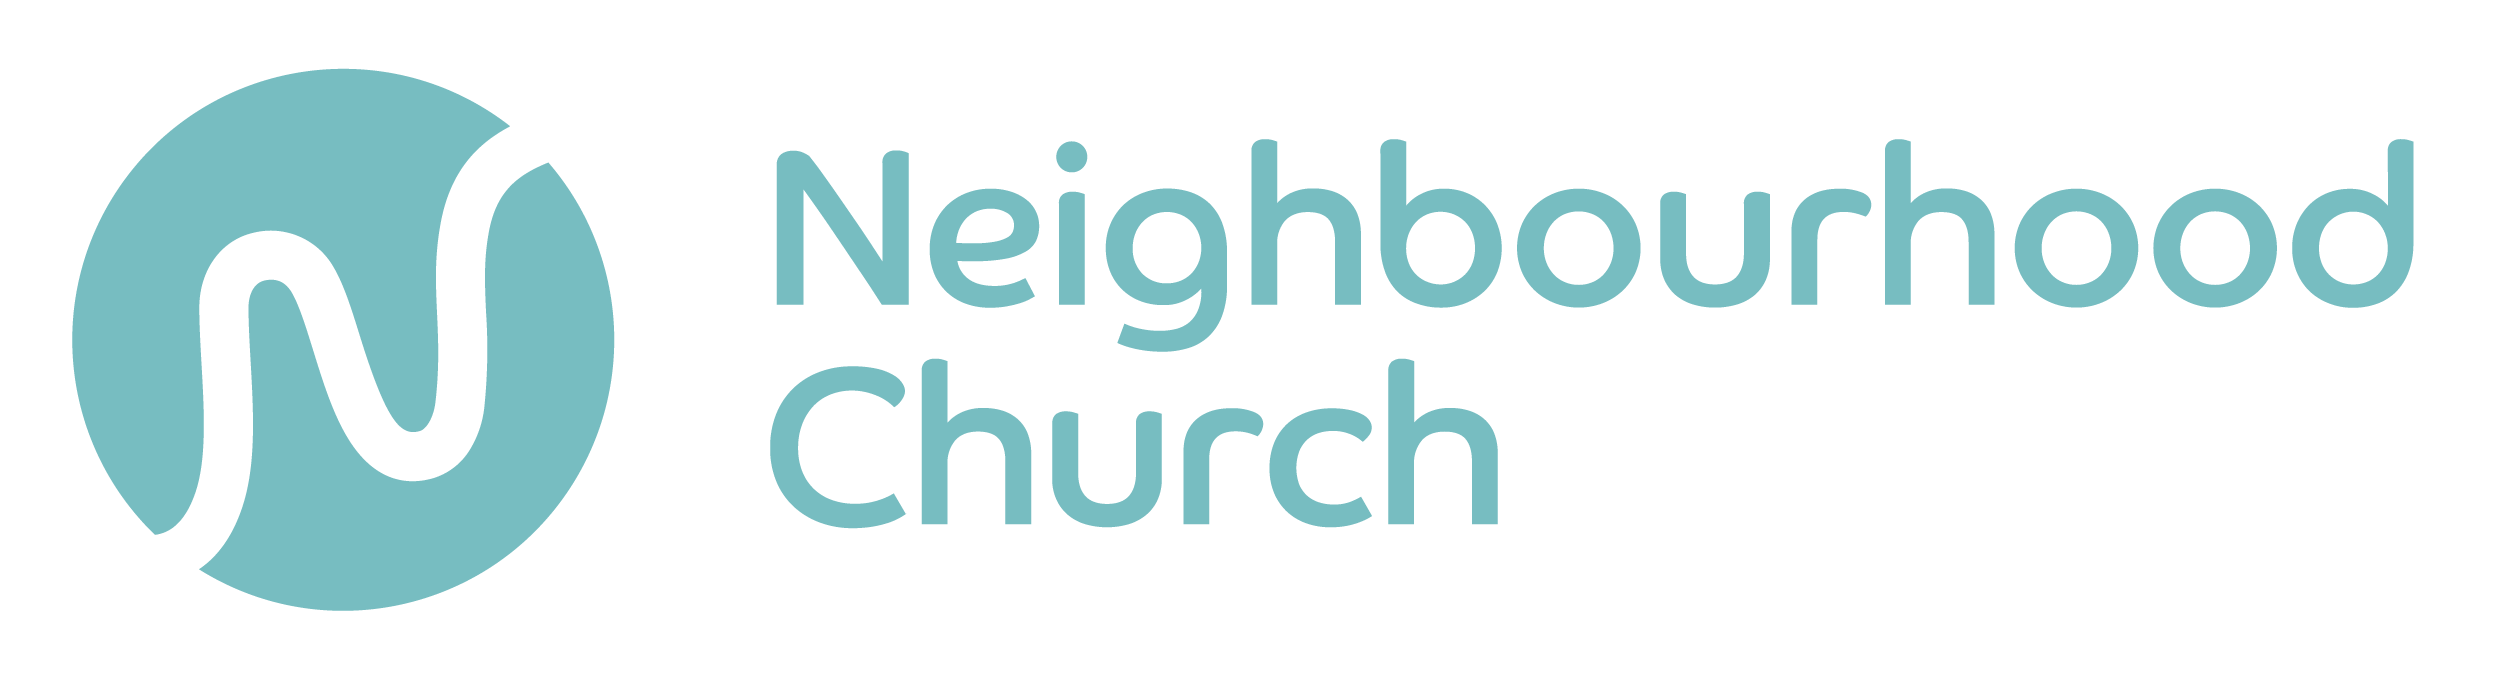 Neighbourhood Church